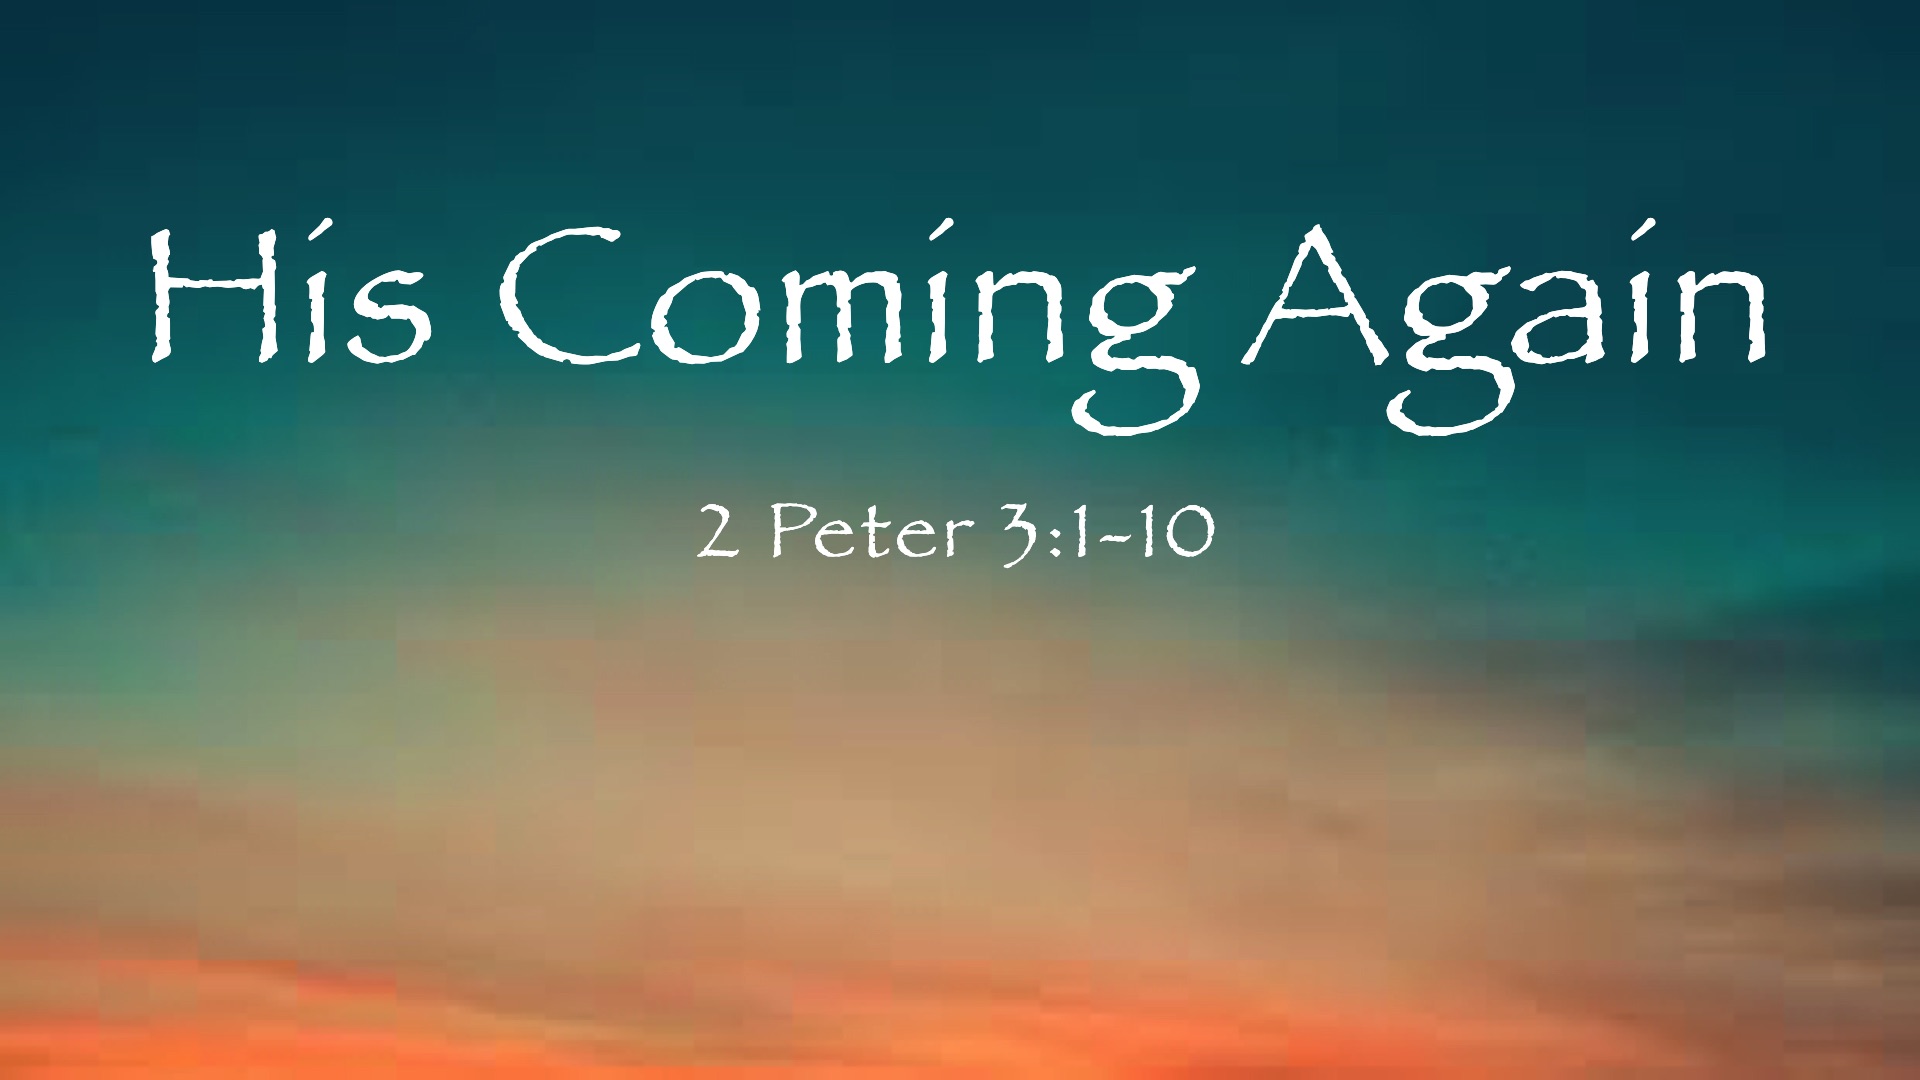 “His Coming Again”